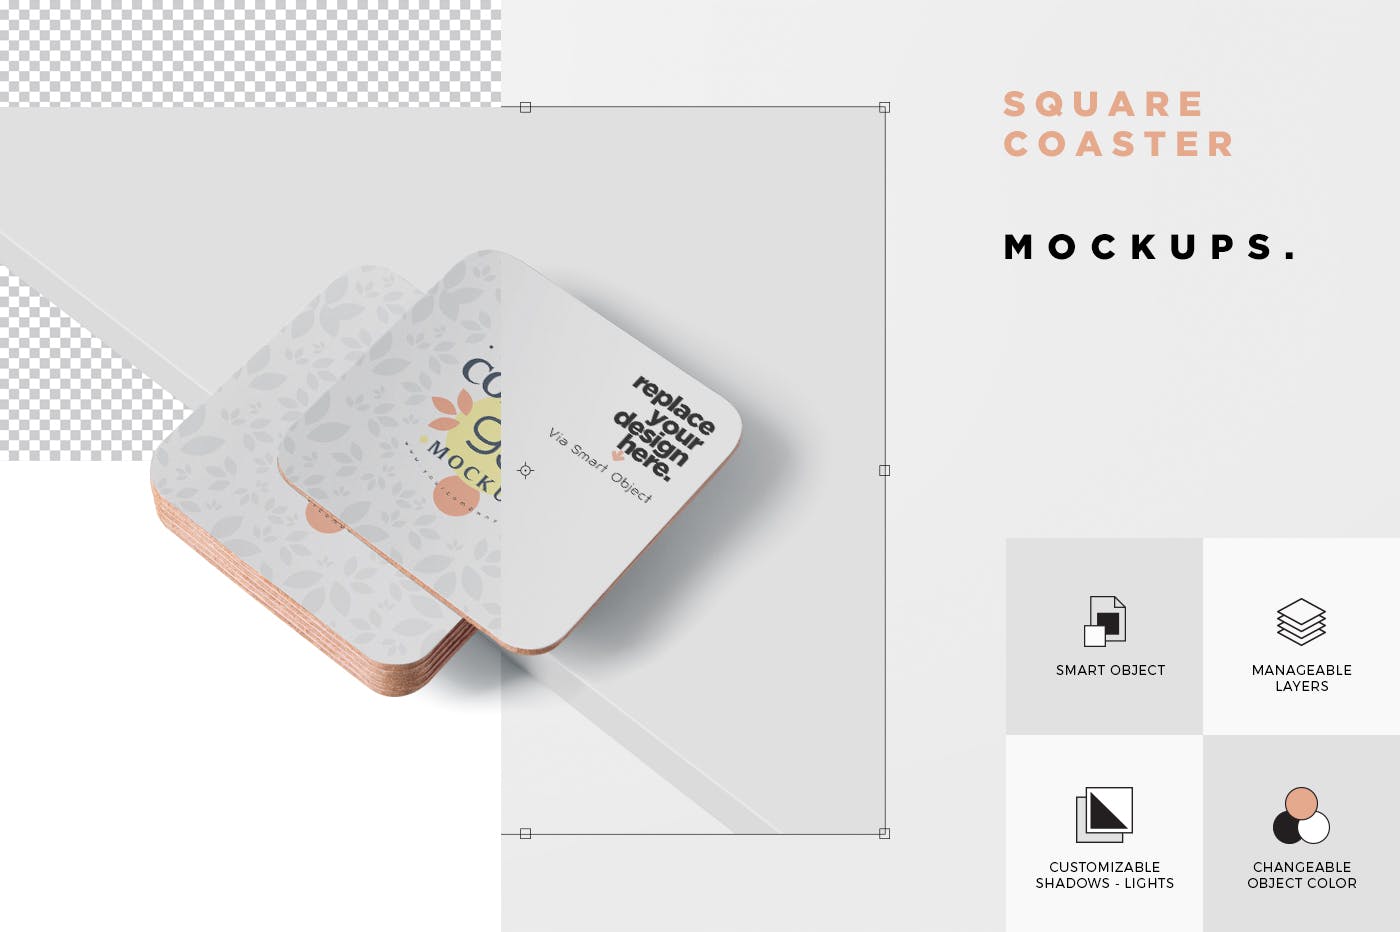 圆角方形杯垫图案设计素材库精选模板 Square Coaster Mock-Up with Round Corner插图(5)